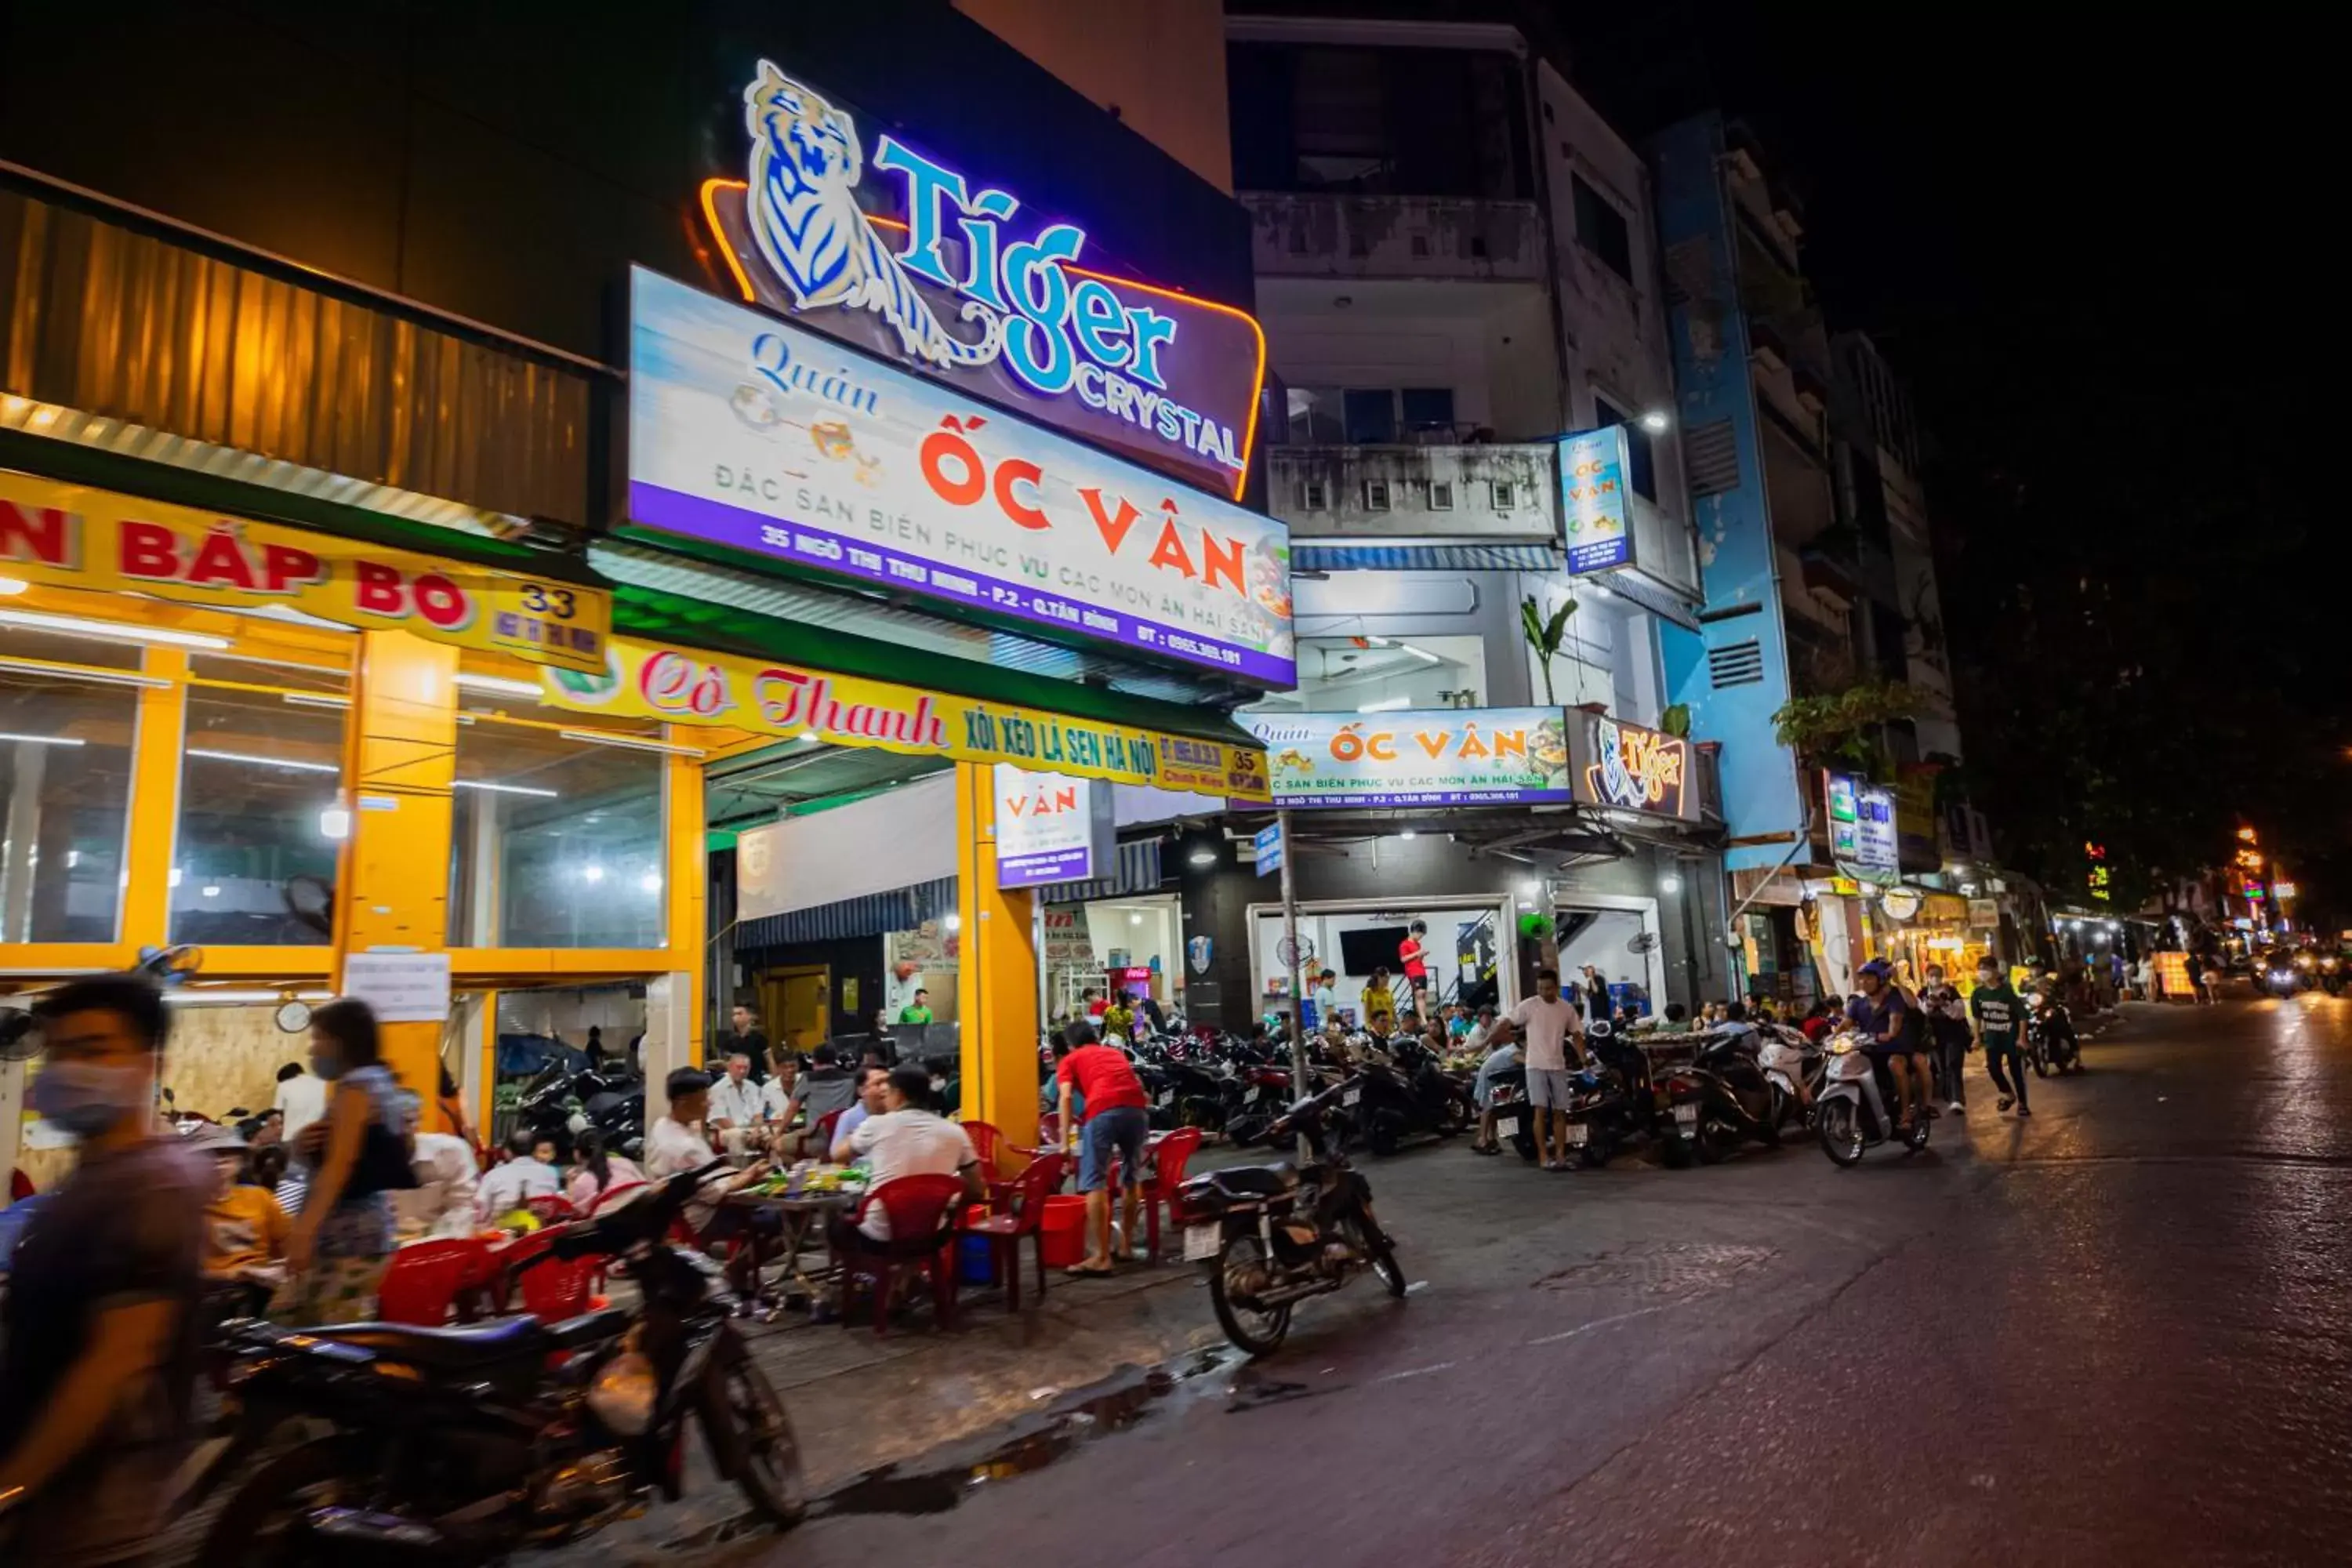 Other in Airport Saigon Hotel - Gần ẩm thực đêm chợ Phạm Văn Hai